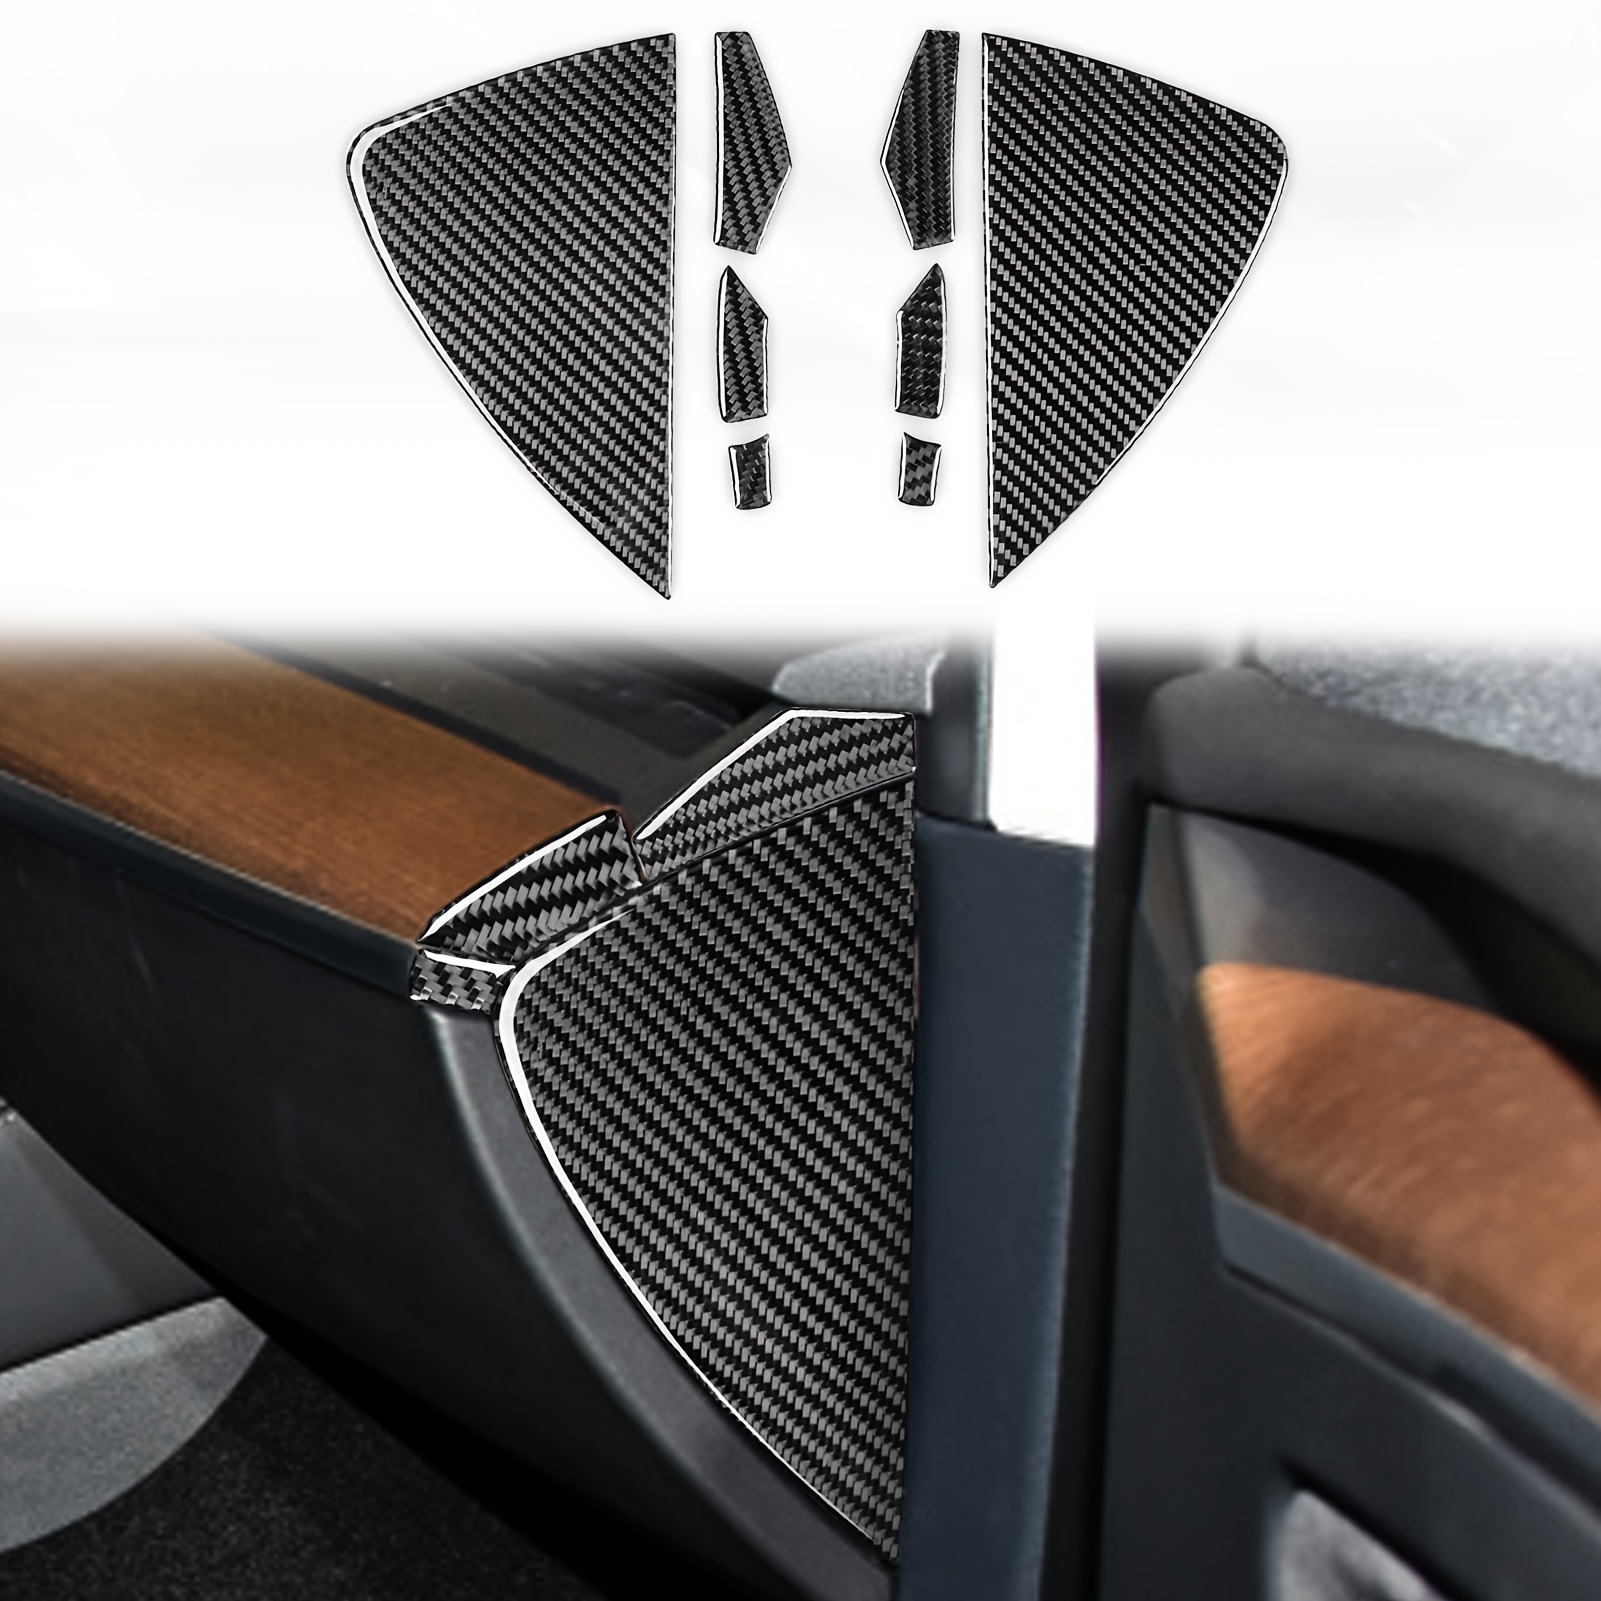 BETTERHUMZ Alcantara - Adhesivo adhesivo para el panel de interruptor de  elevación de ventana de automóvil para Tesla Model 3, modelo Y, color negro